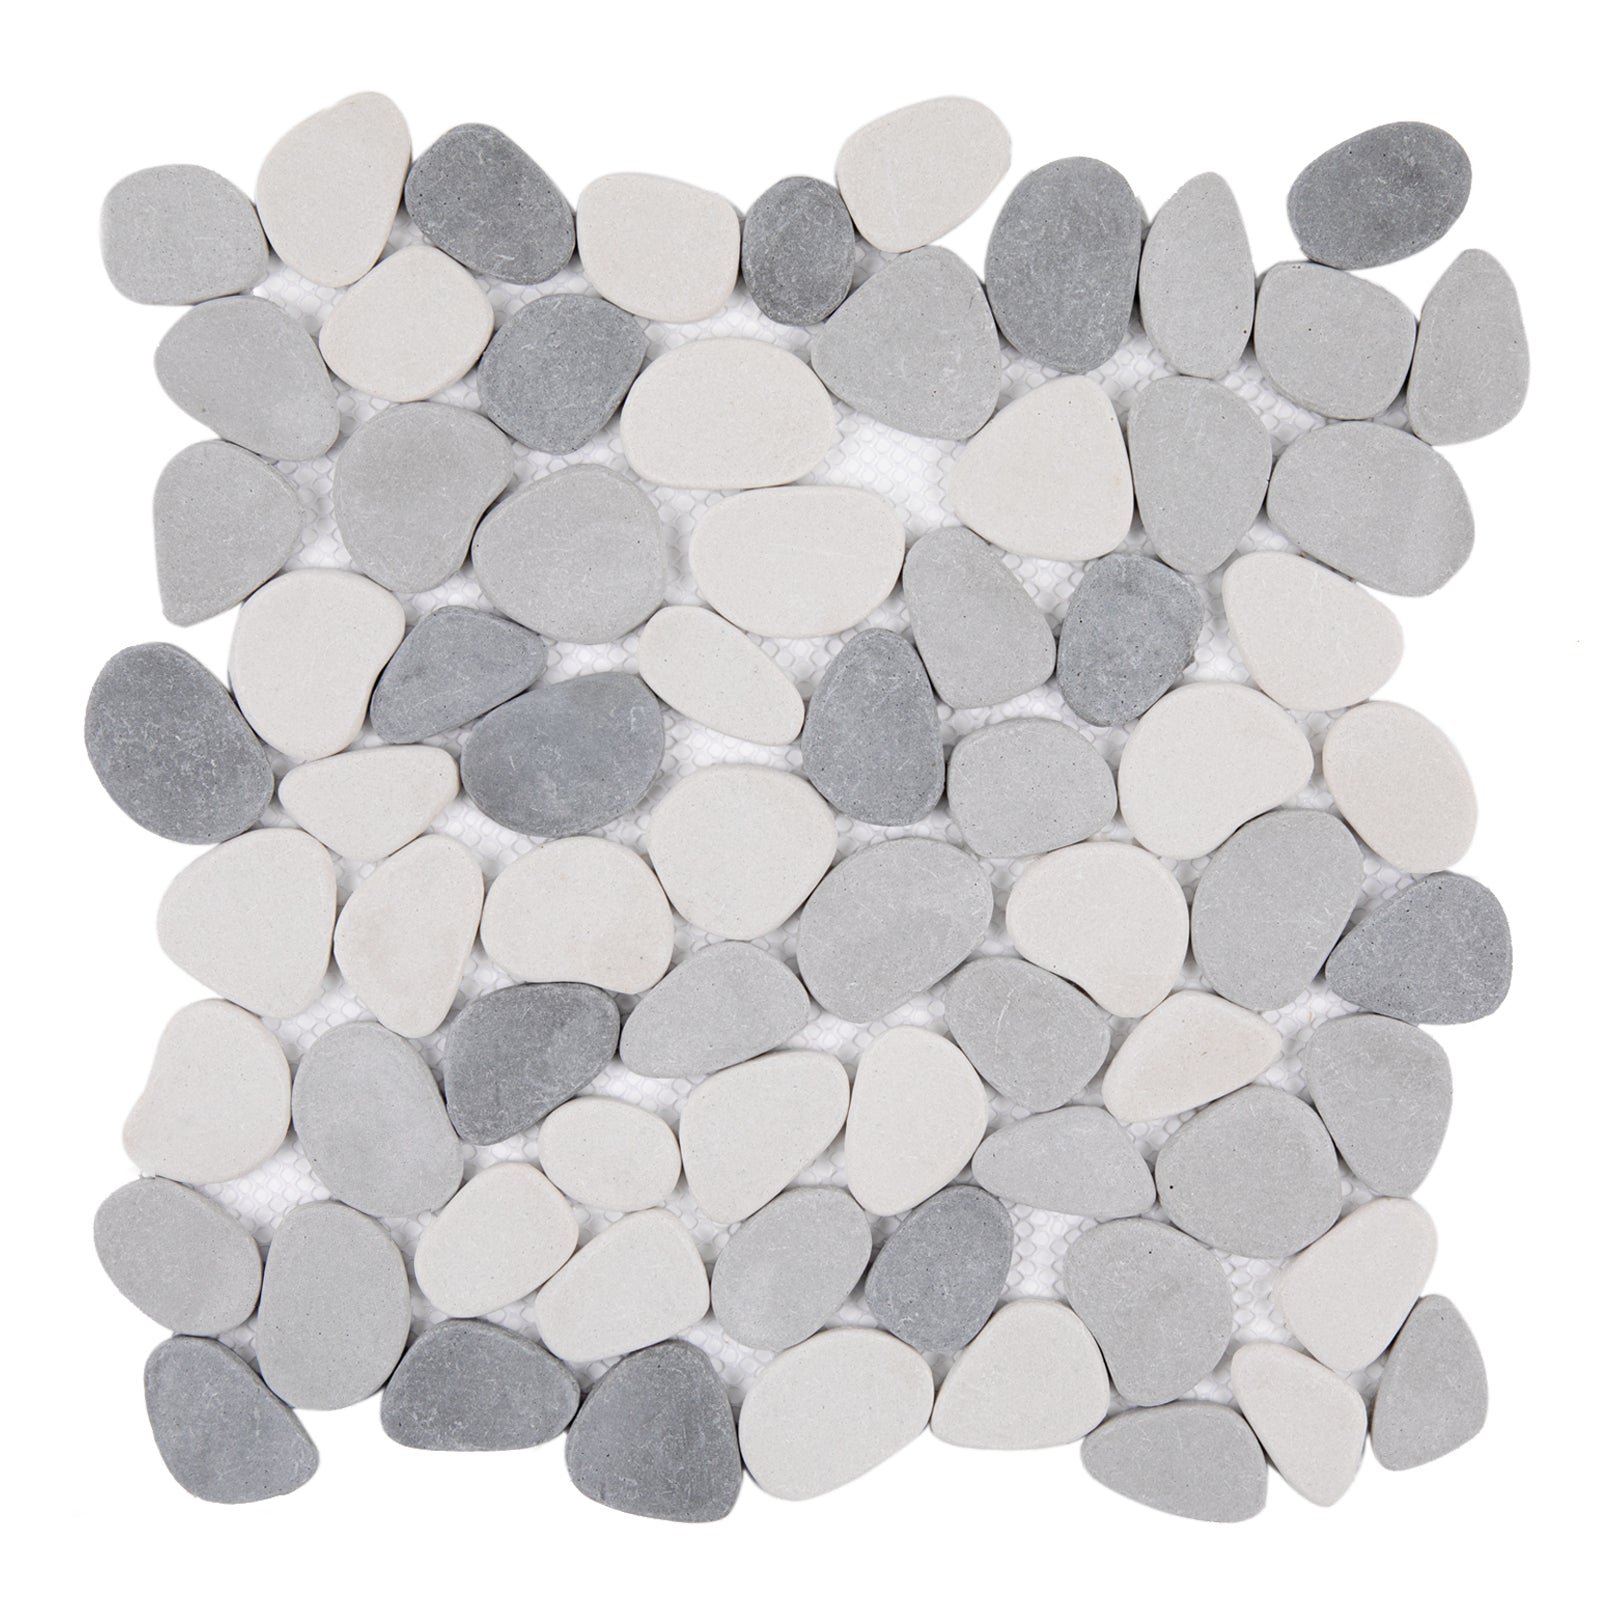 Diflart Sliced Pebble Tile Tumbled for Kitchen Bathroom Backsplask Shower Floor Pack of 5 Sheets (Gray and White)